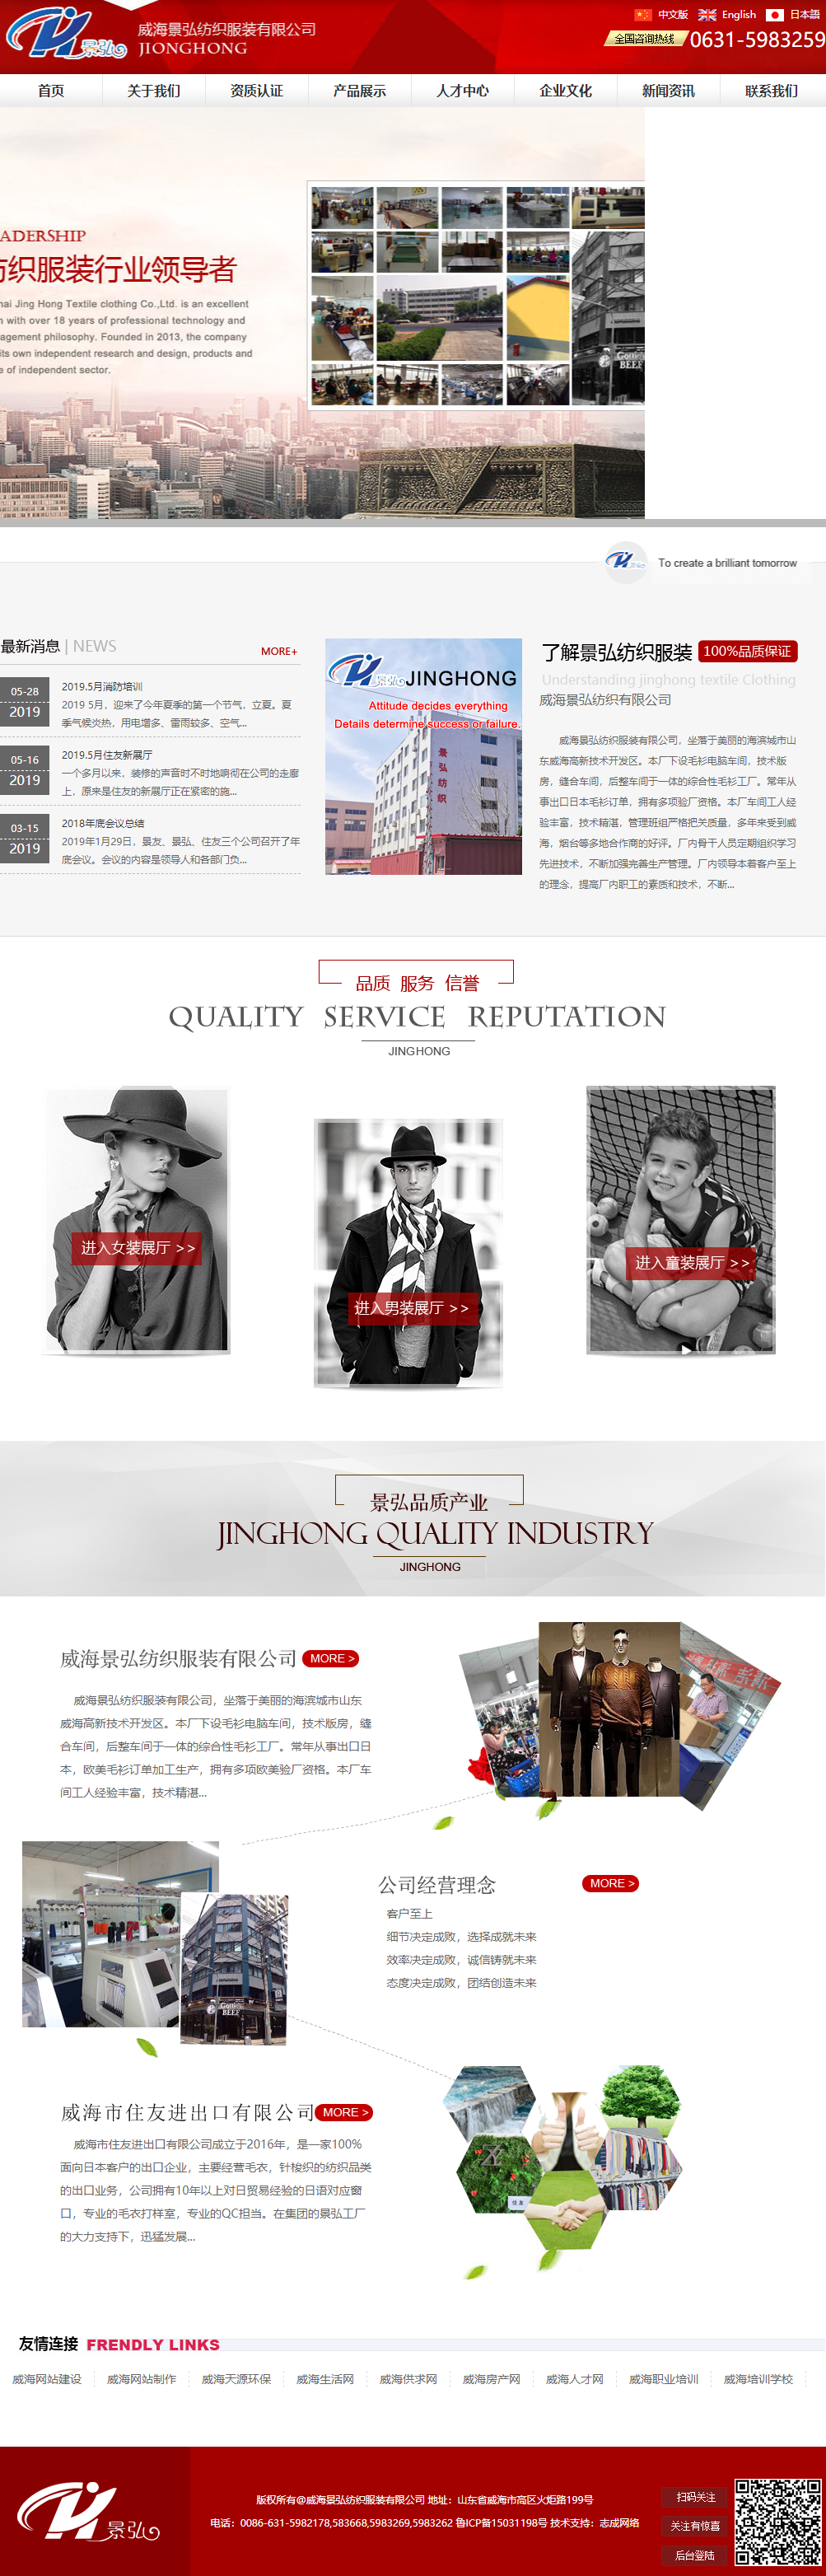 威海景弘纺织服装有限公司网站案例